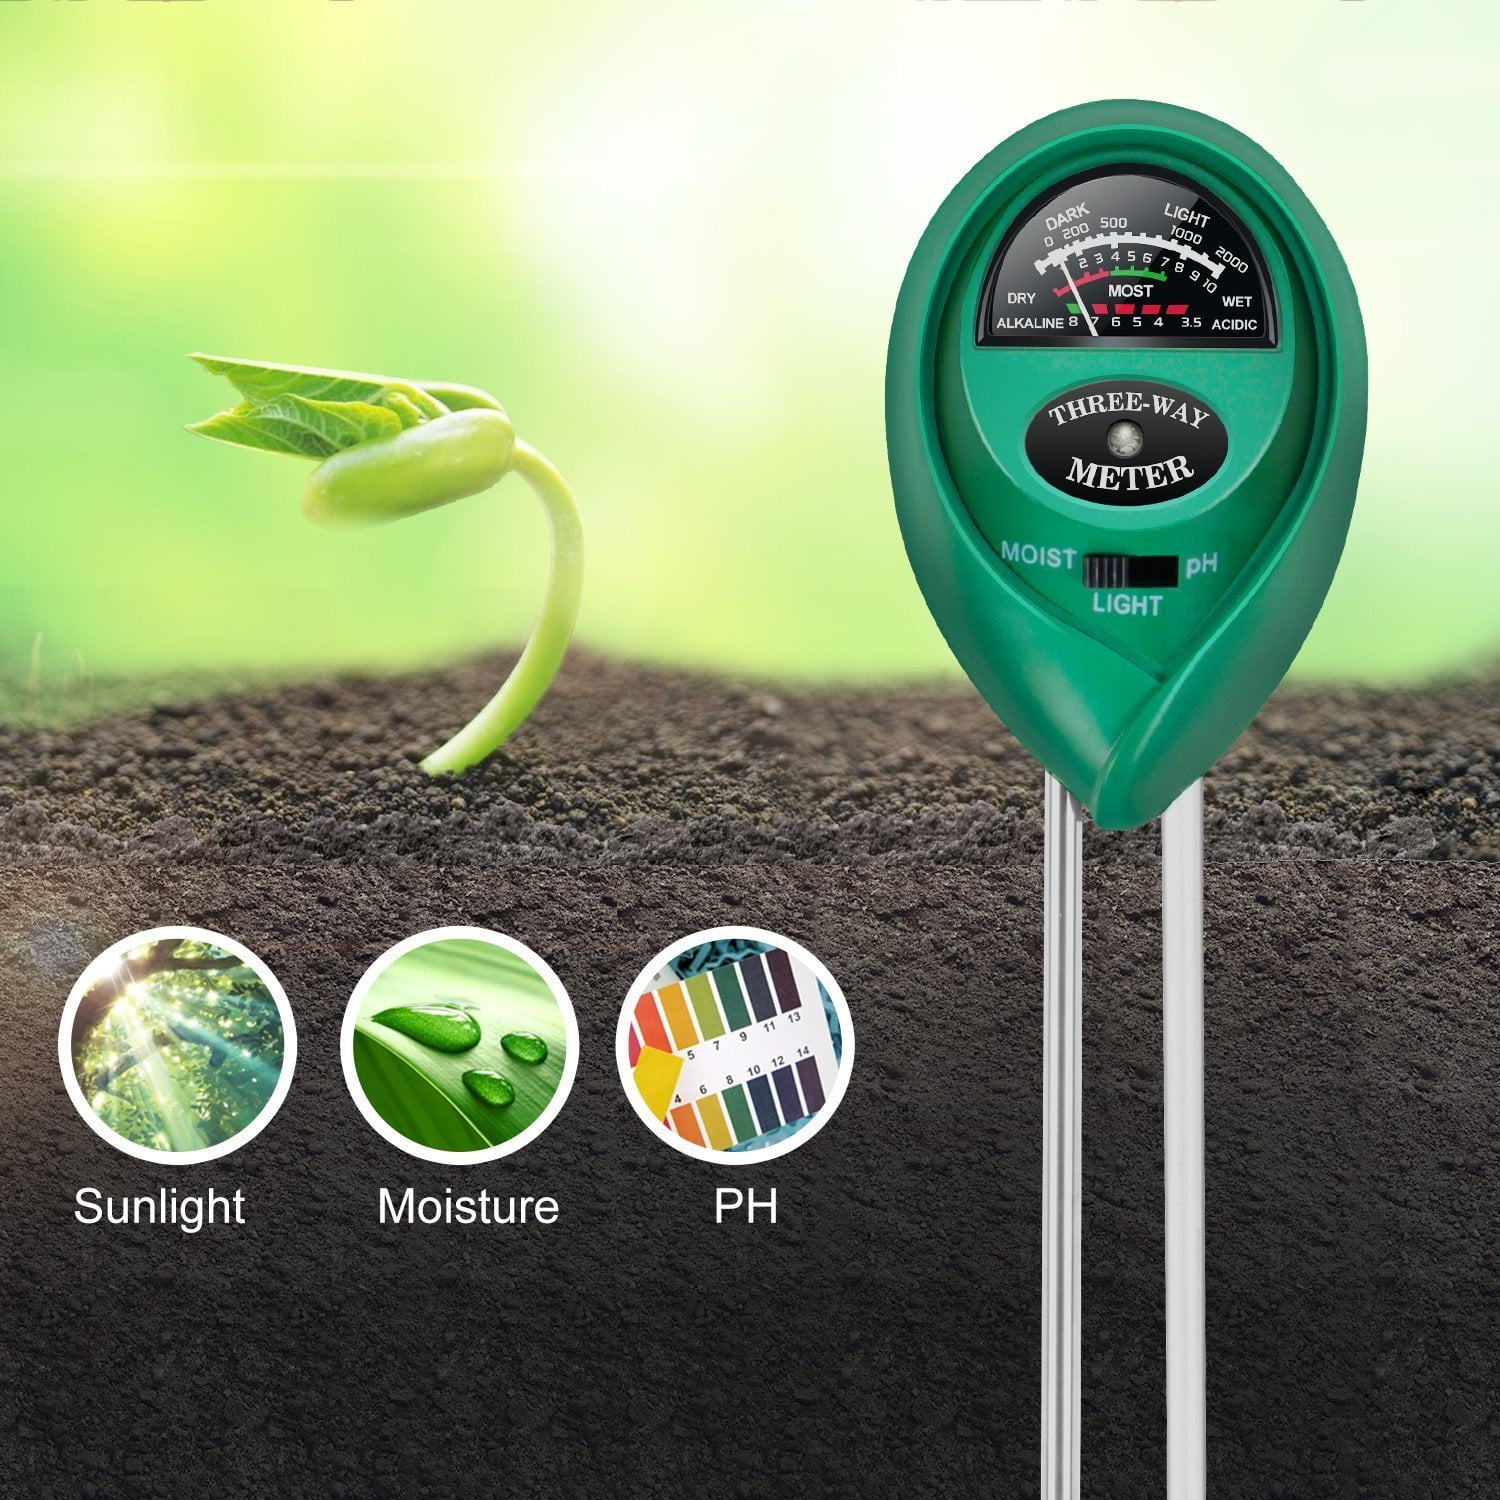 3 in1*Soil Tester Water PH Moisture Light Test Meter Kit For Garden Plant' JFCA 